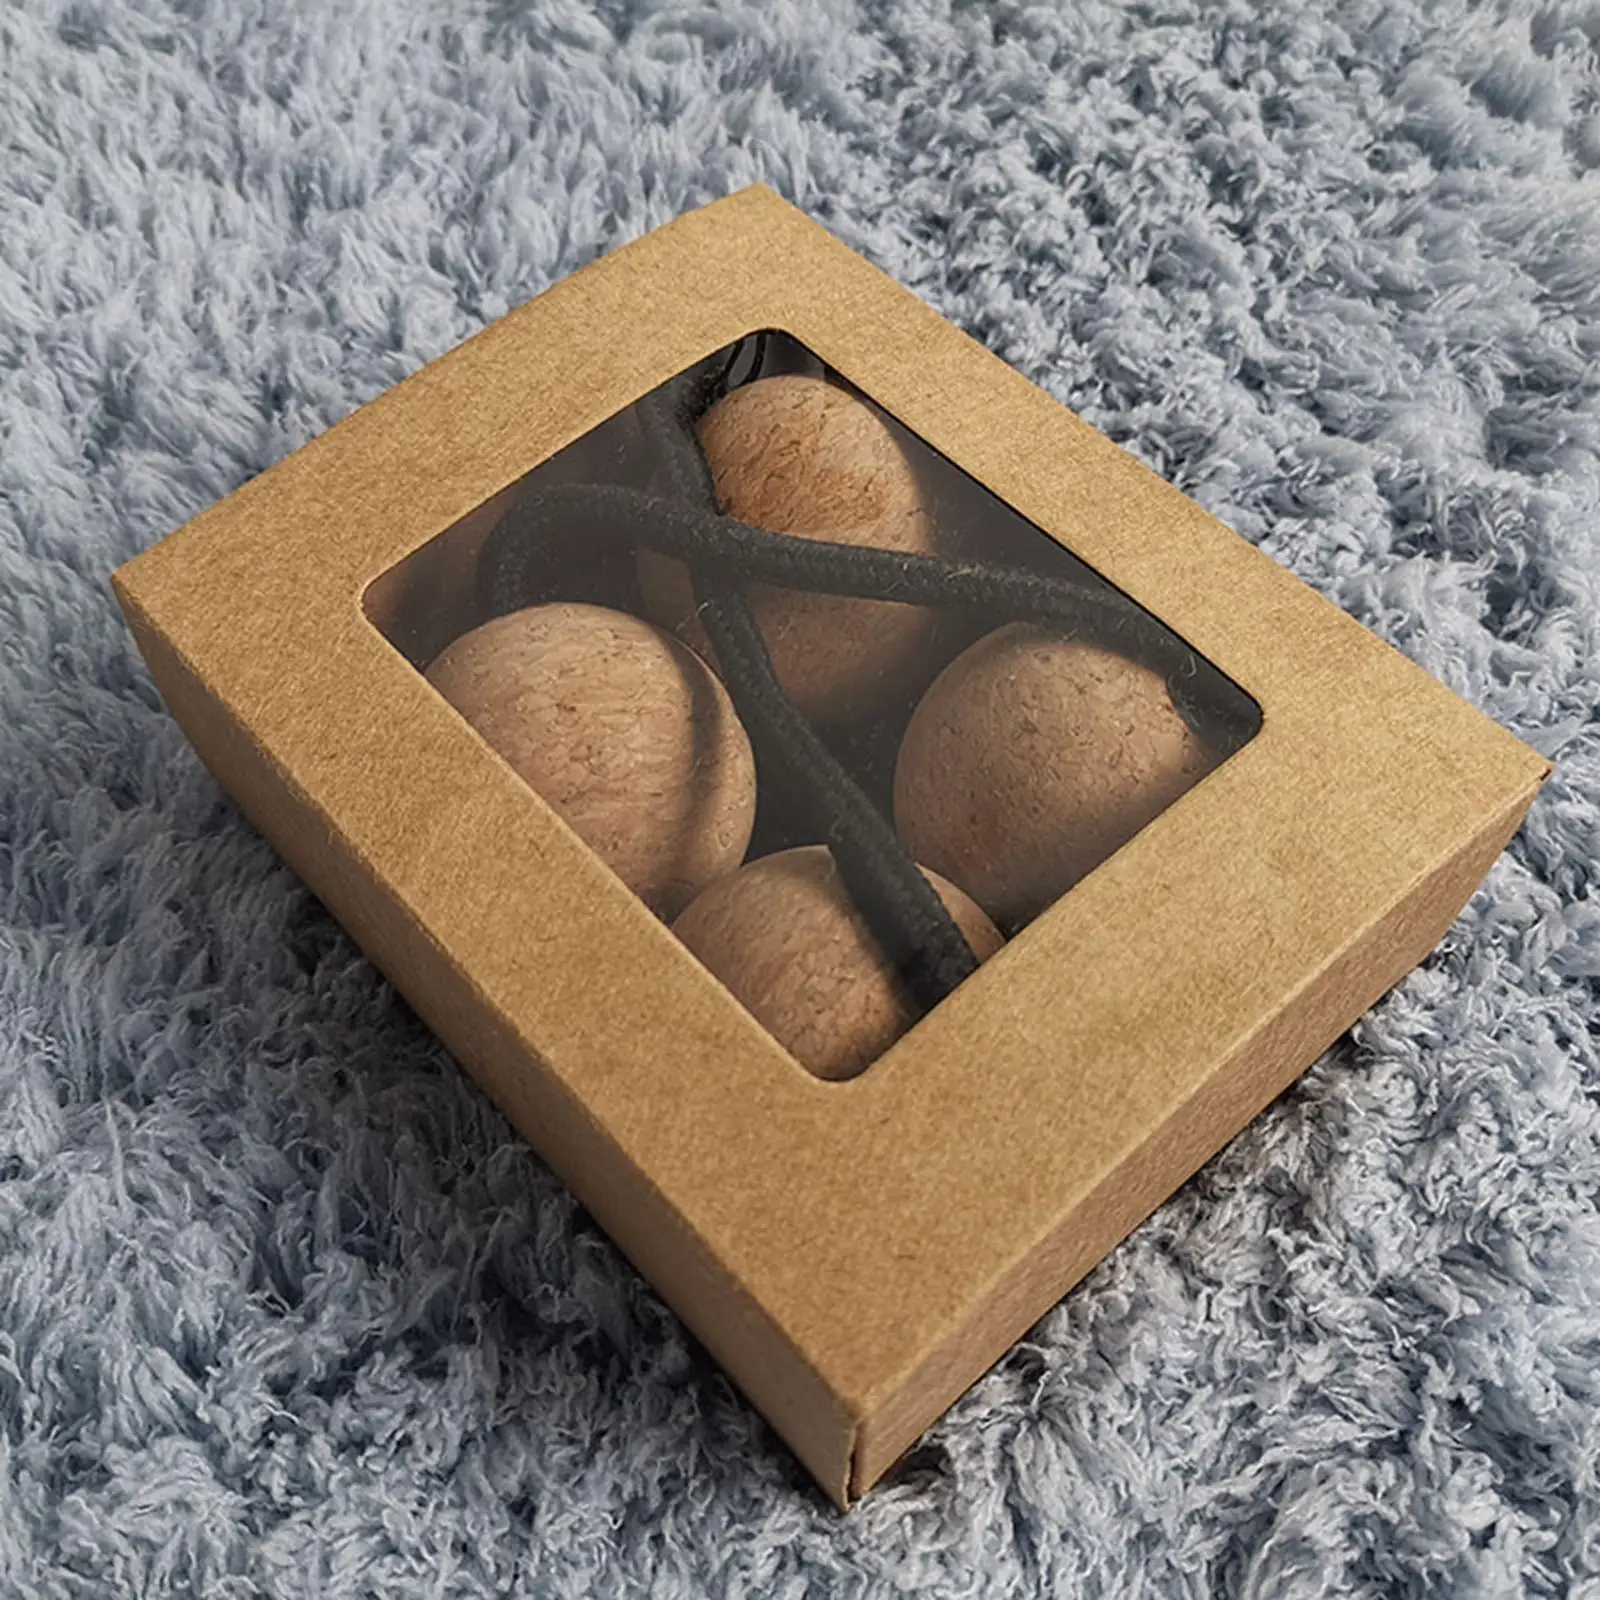 Rhythmic Sand Balls Music Eggs Double Gourd African Shaker Rattle for Unisex